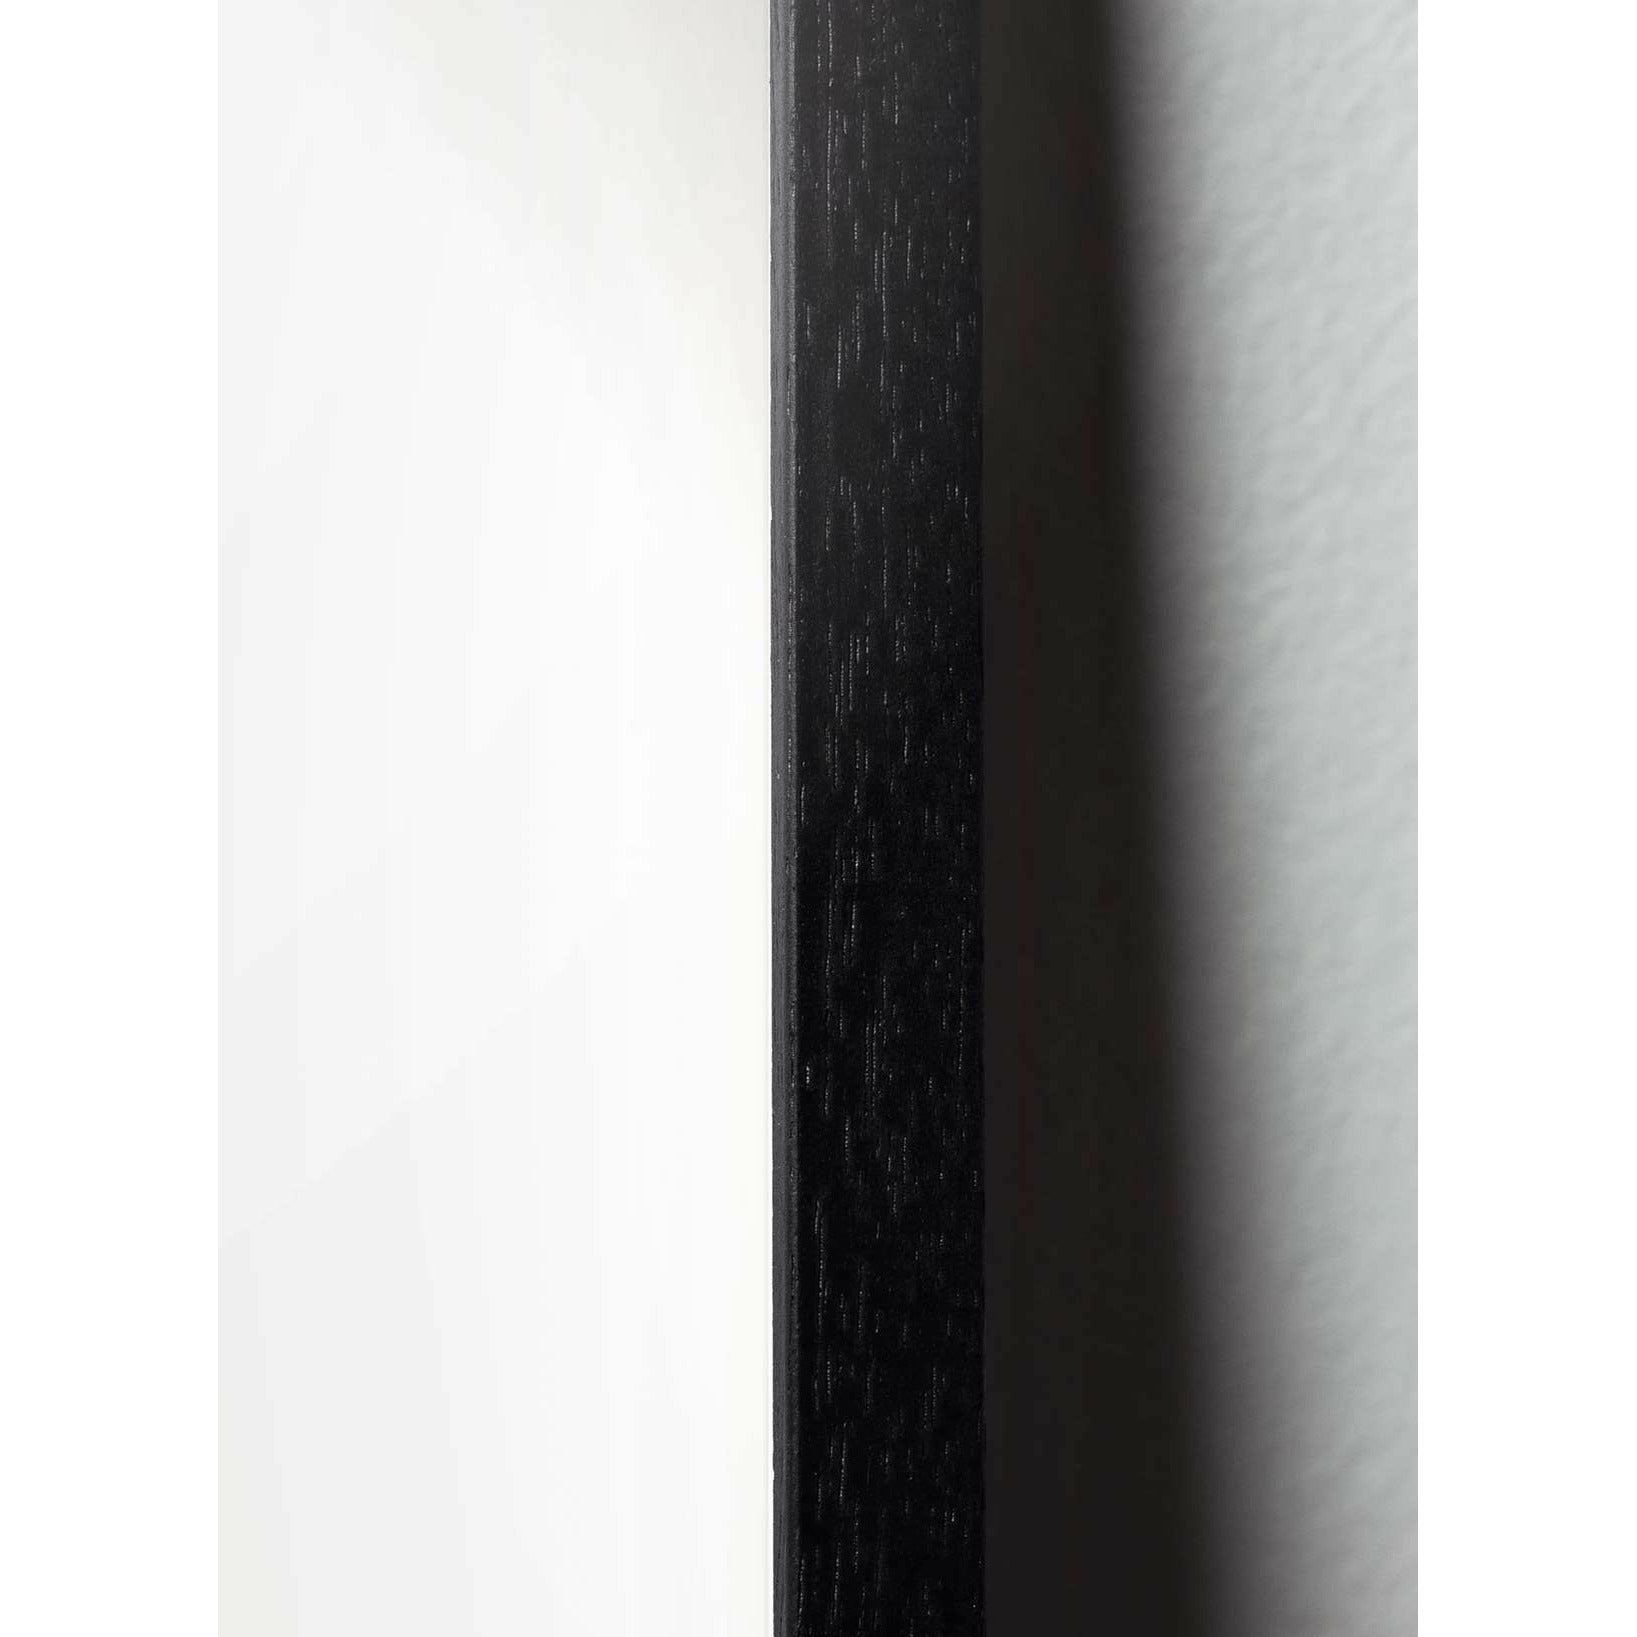 Brainchild Ægpapir klip plakat, ramme i sort lakeret træ 50x70 cm, lyserød baggrund